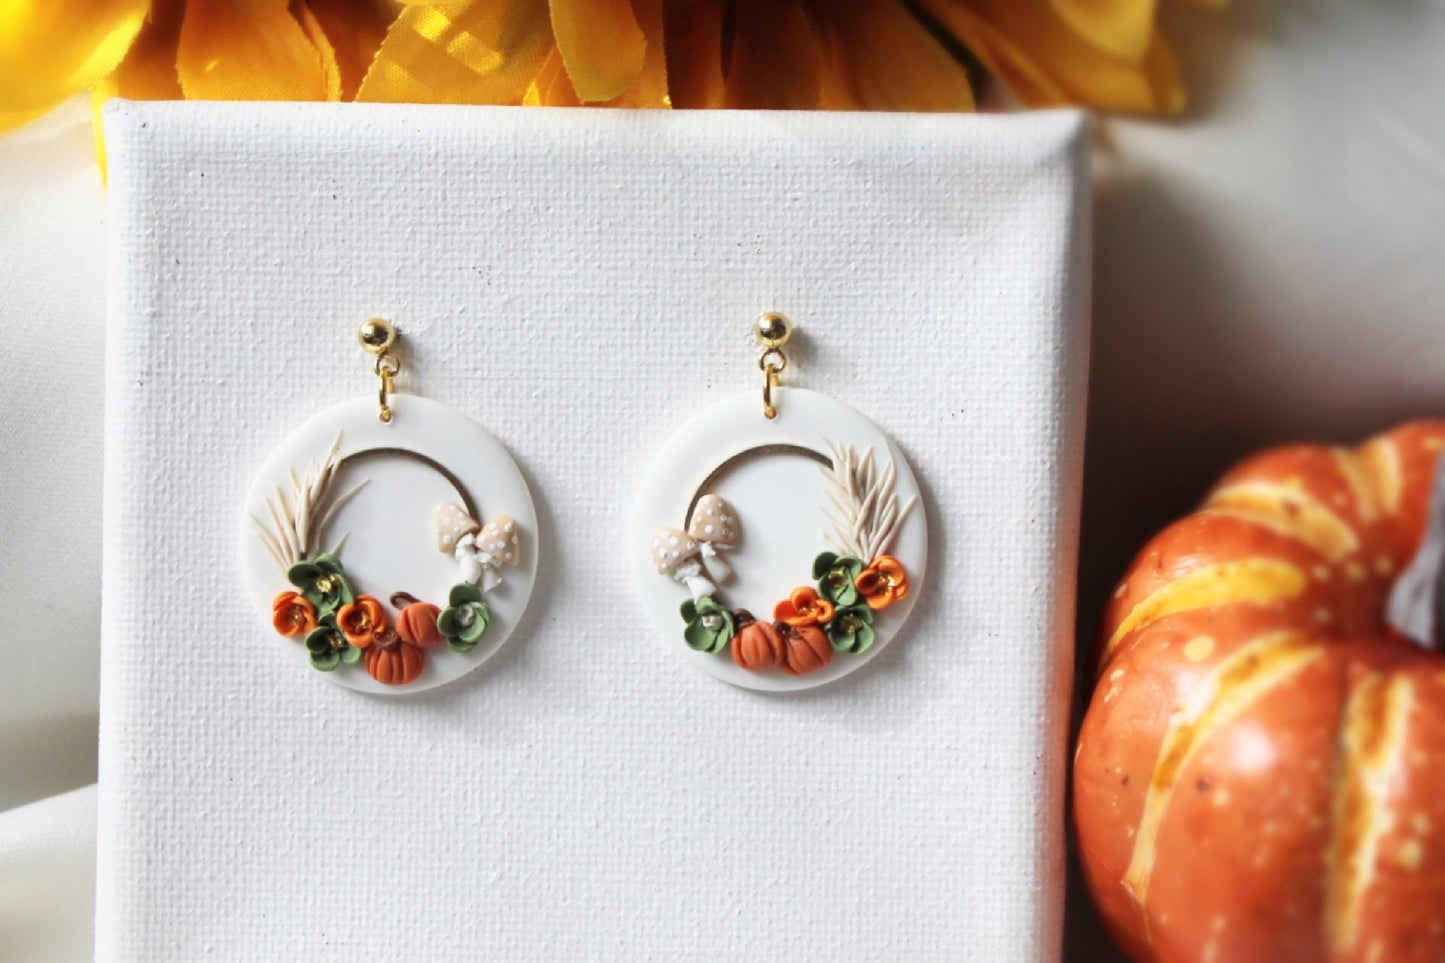 Fall Earrings, Wreath Earrings, Autumn Earrings, Polymer Clay Earrings, Pumpkin Earrings, Mushroom, Halloween, Clay Earrings, Handmade, Gift